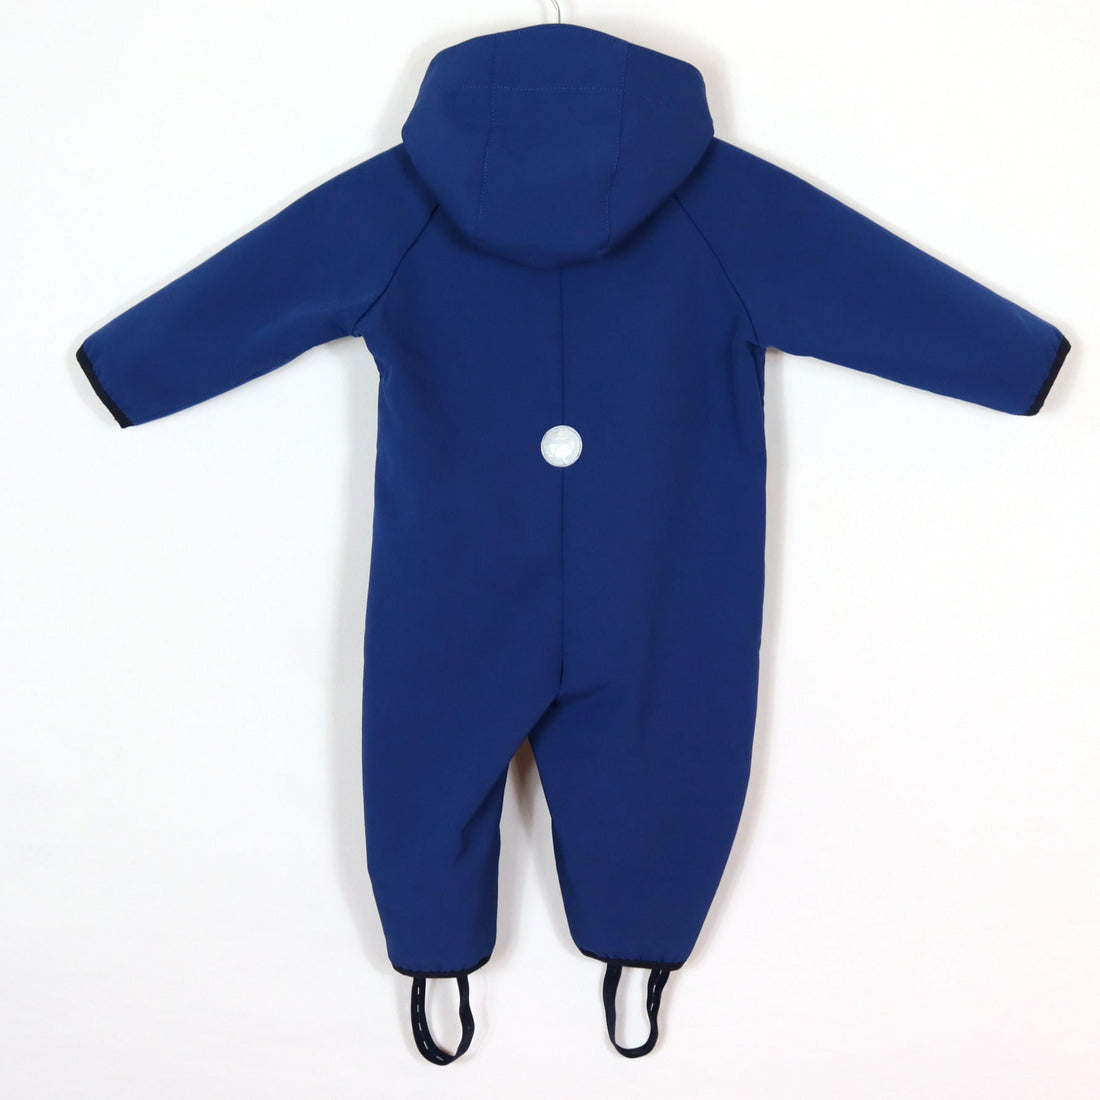 Regenkleidung - Matschanzug - blau - 68/74 - Jacadi - Boy - sehr guter Zustand